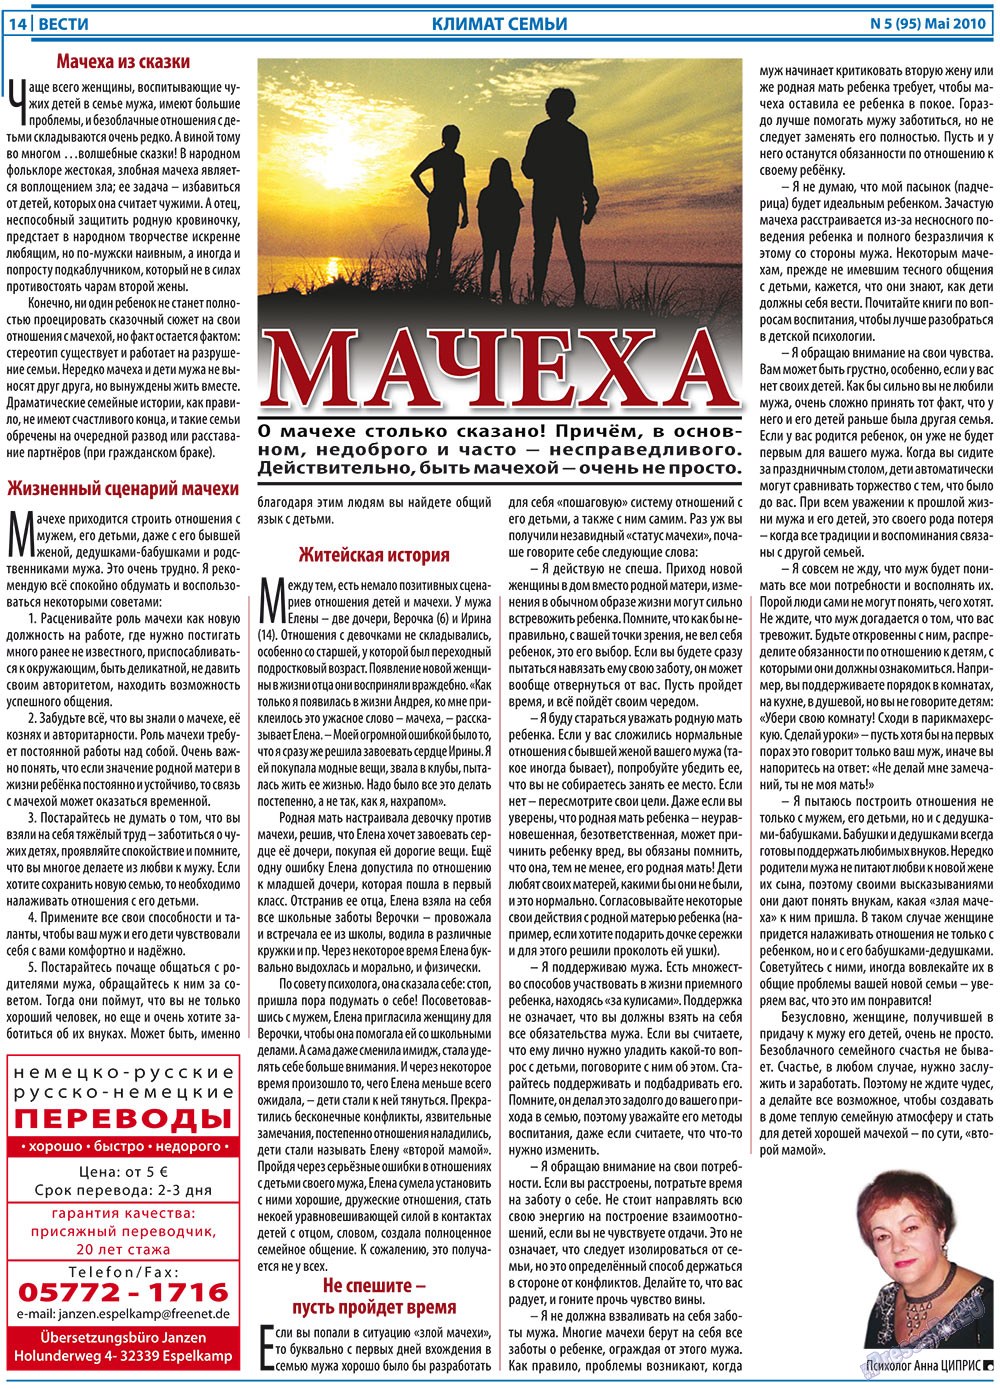 Вести, газета. 2010 №5 стр.14